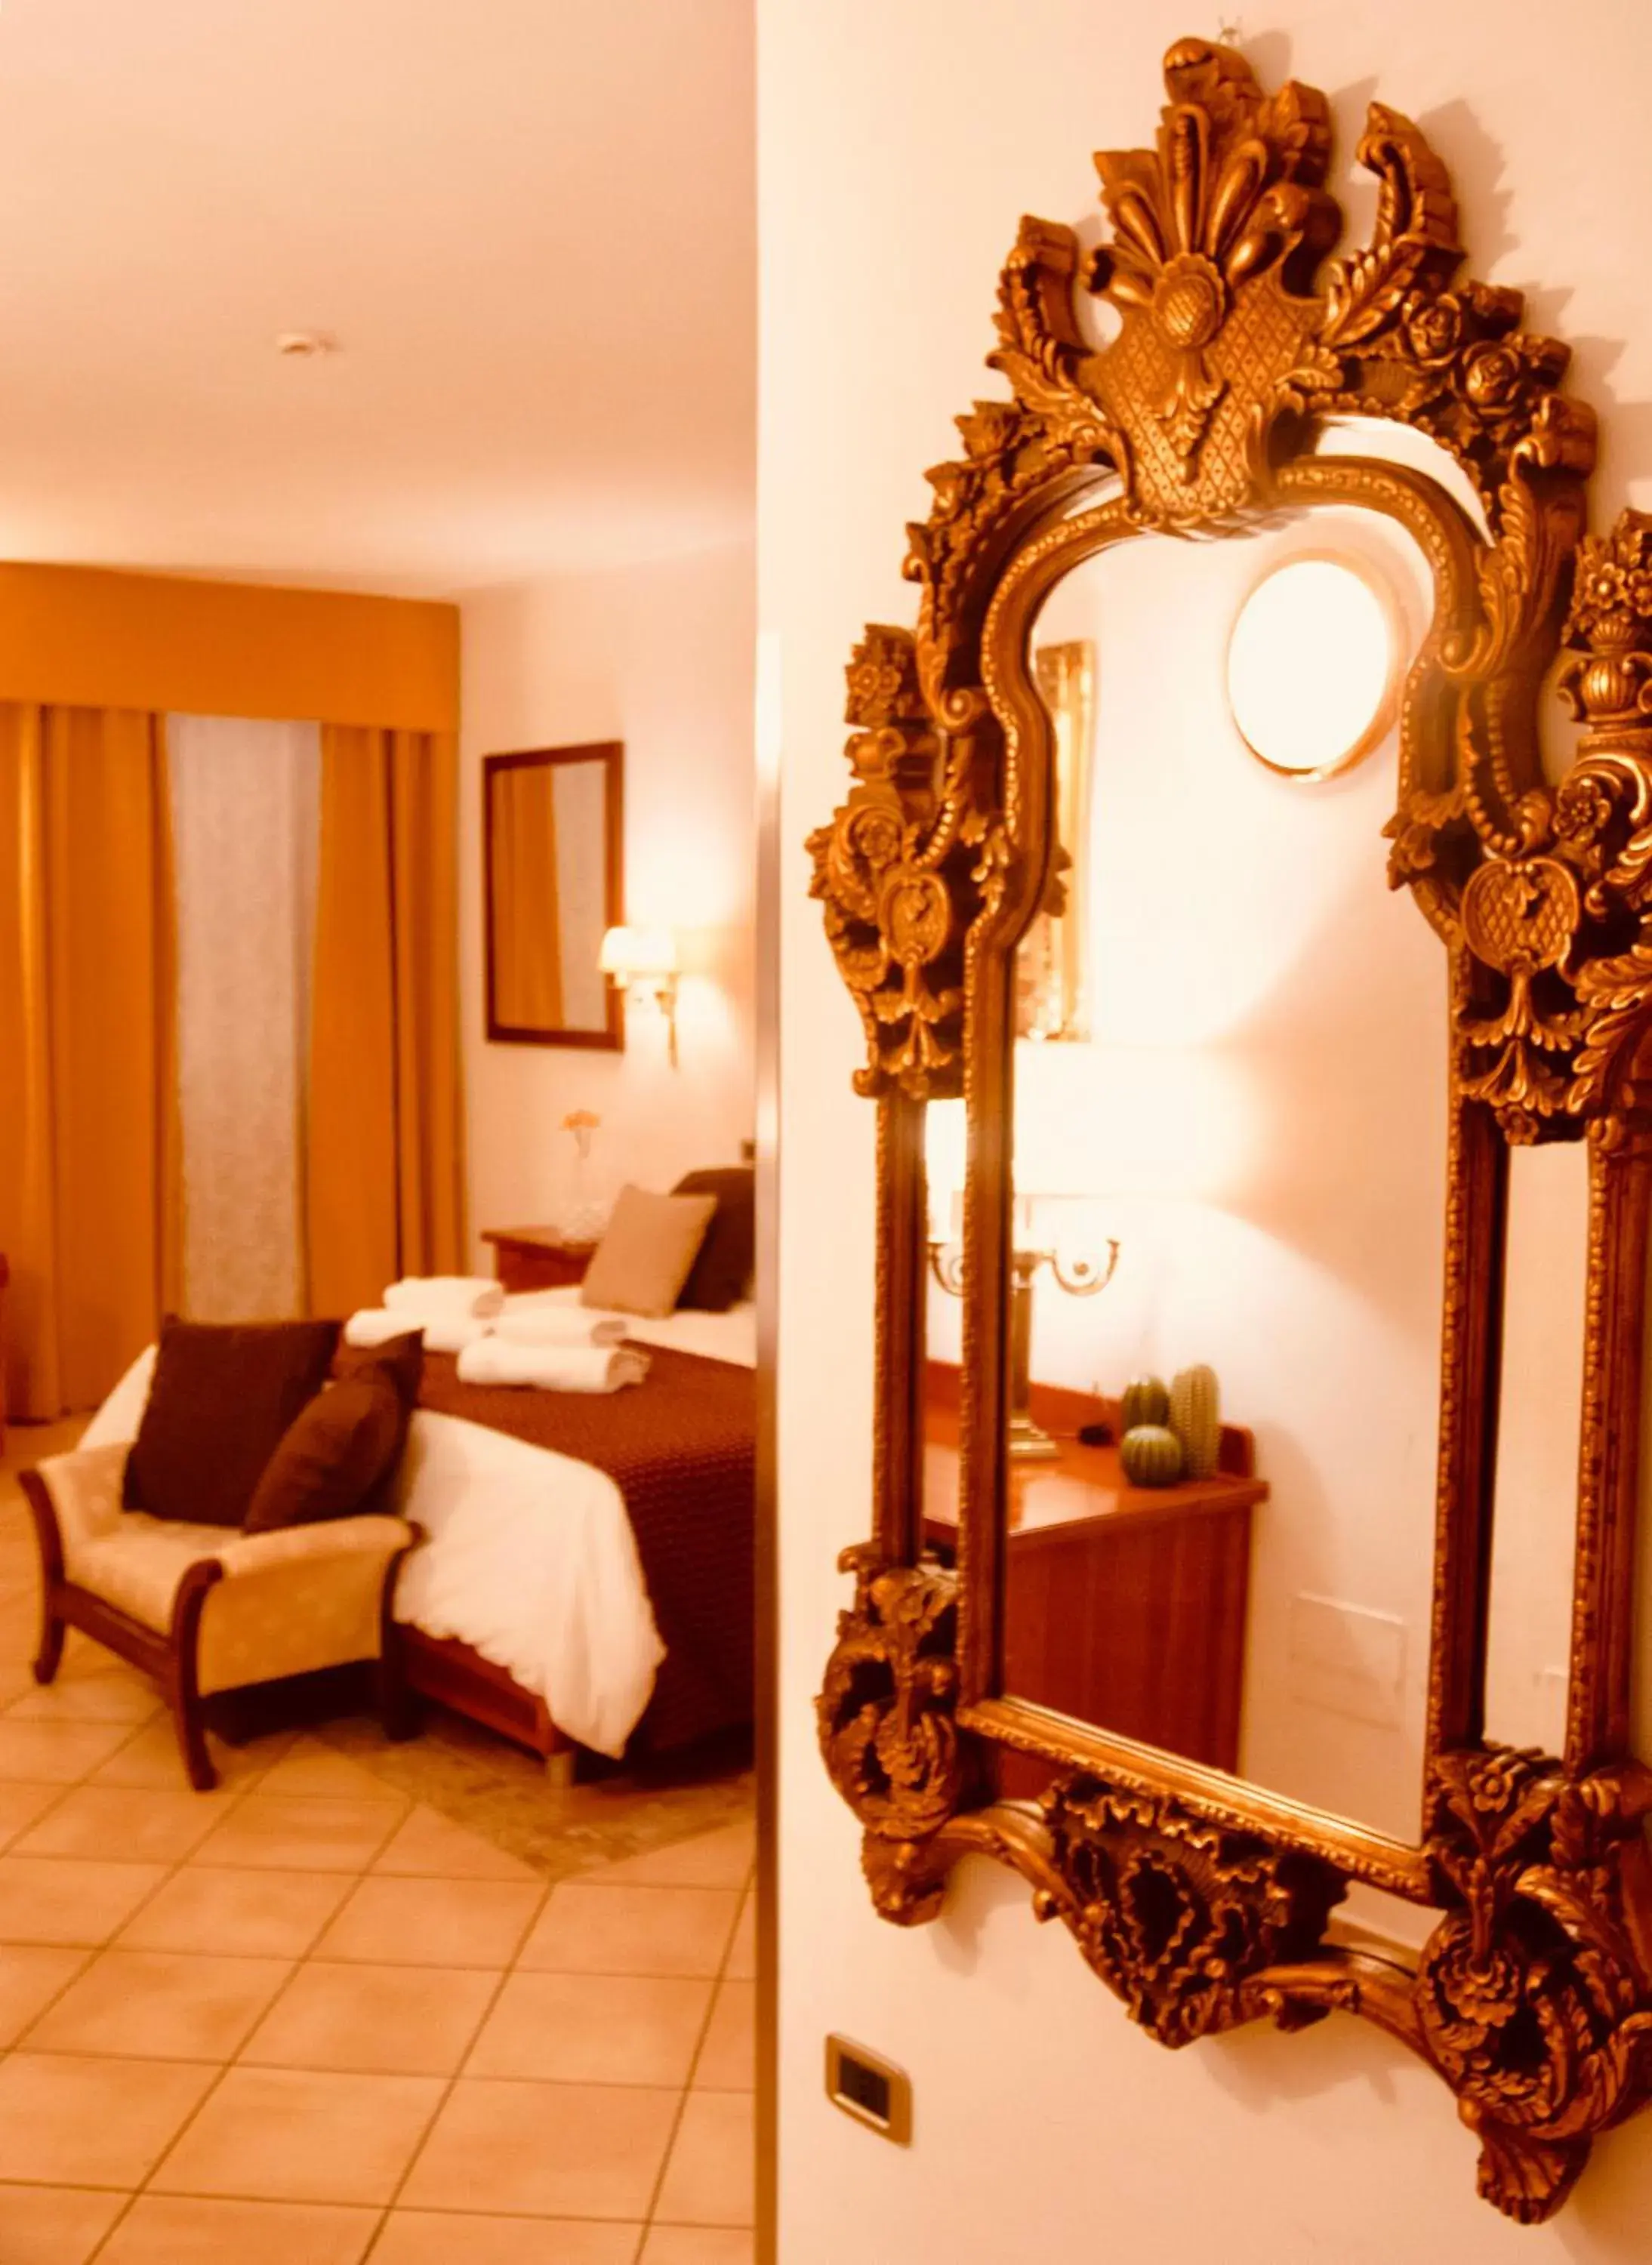 Photo of the whole room in Hotel Ristorante Garibaldi